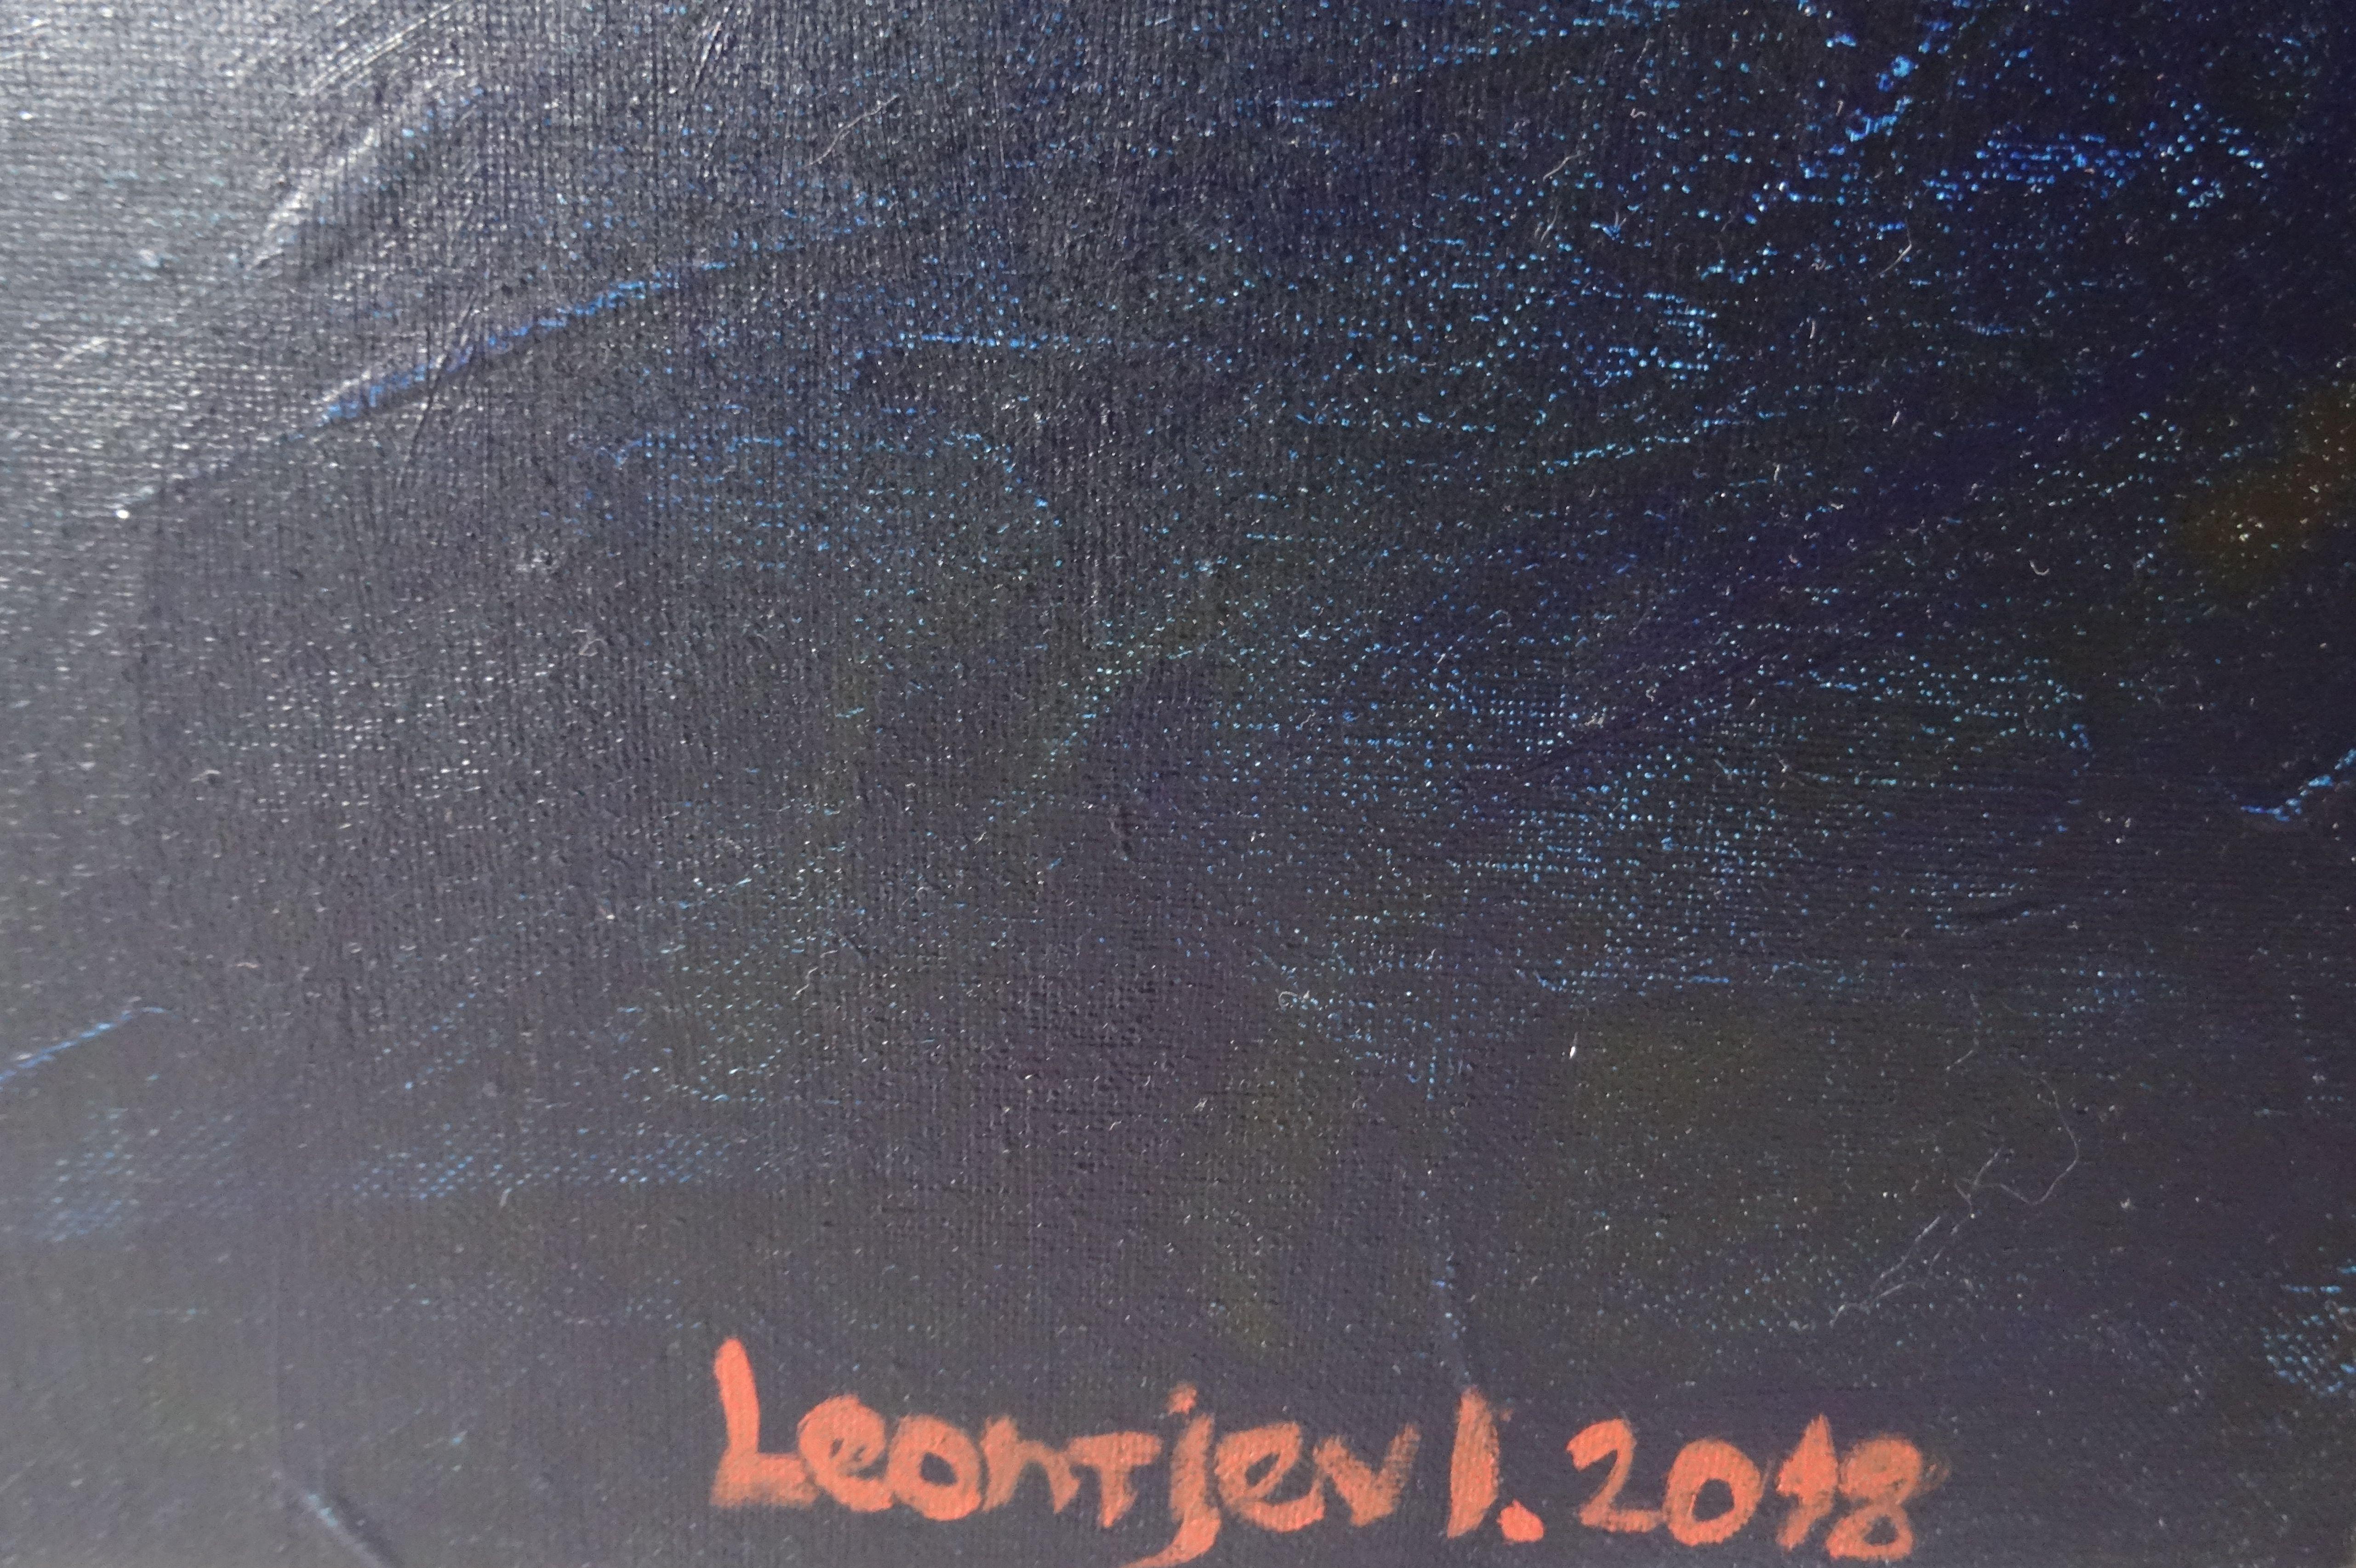 Gelber Tango. 2018, Öl auf Leinwand, 90x100 cm
Abstrakte Komposition in rot, blau, gelb Farben

Igor Leontiev (1957) - einer der führenden unabhängigen Maler in Lettland

Geboren in Riga, Lettland.
Er studierte an der Kunstschule von Rozental, an